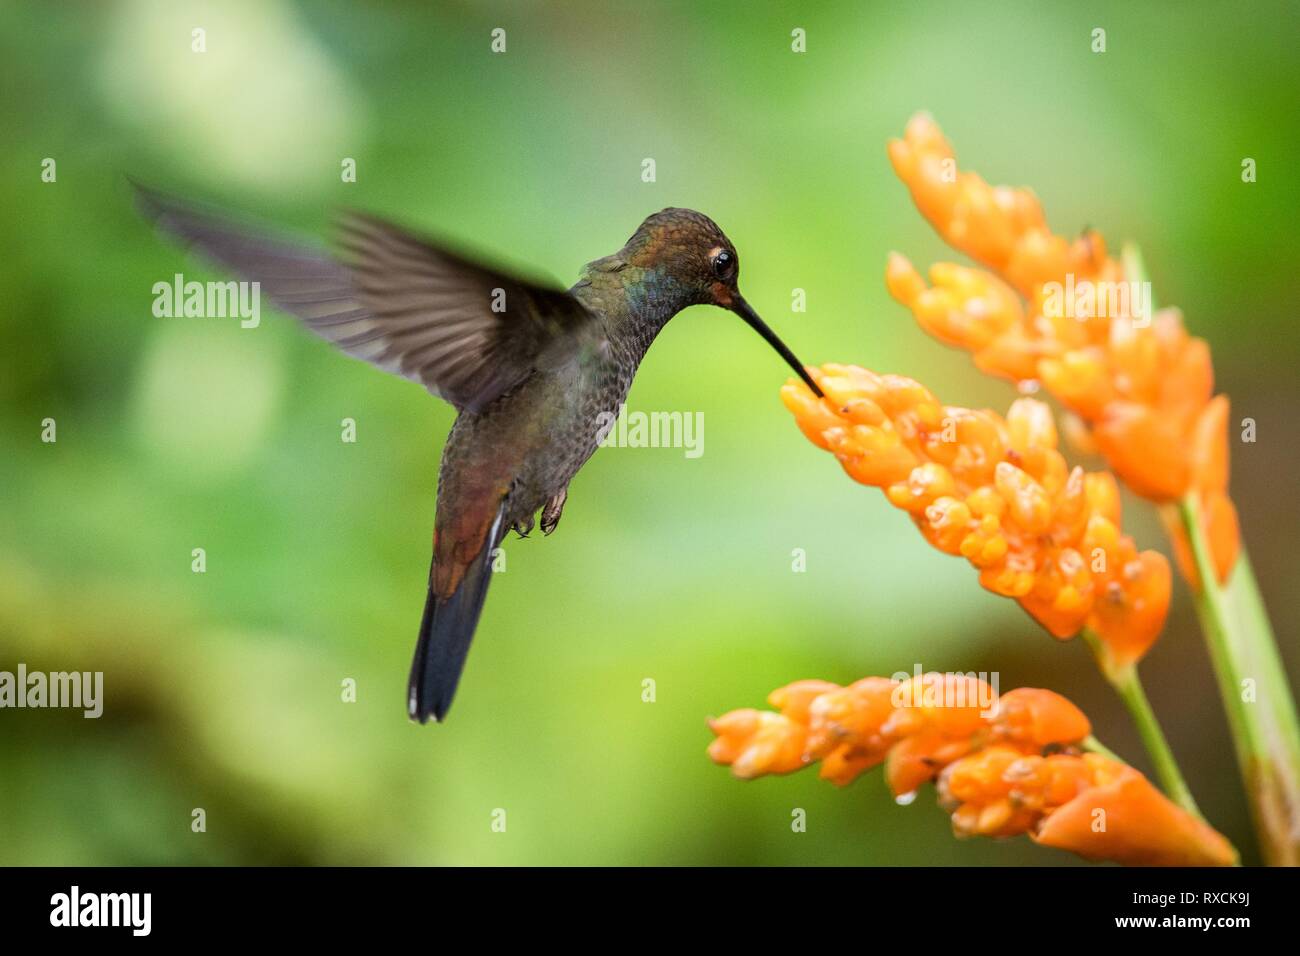 Hummingbird schwebt Neben orange Blumen, Garten, tropischer Wald, Brasilien, Vogel im Flug mit ausgebreiteten Flügeln, flying Kolibri Nektar saugen Fro Stockfoto